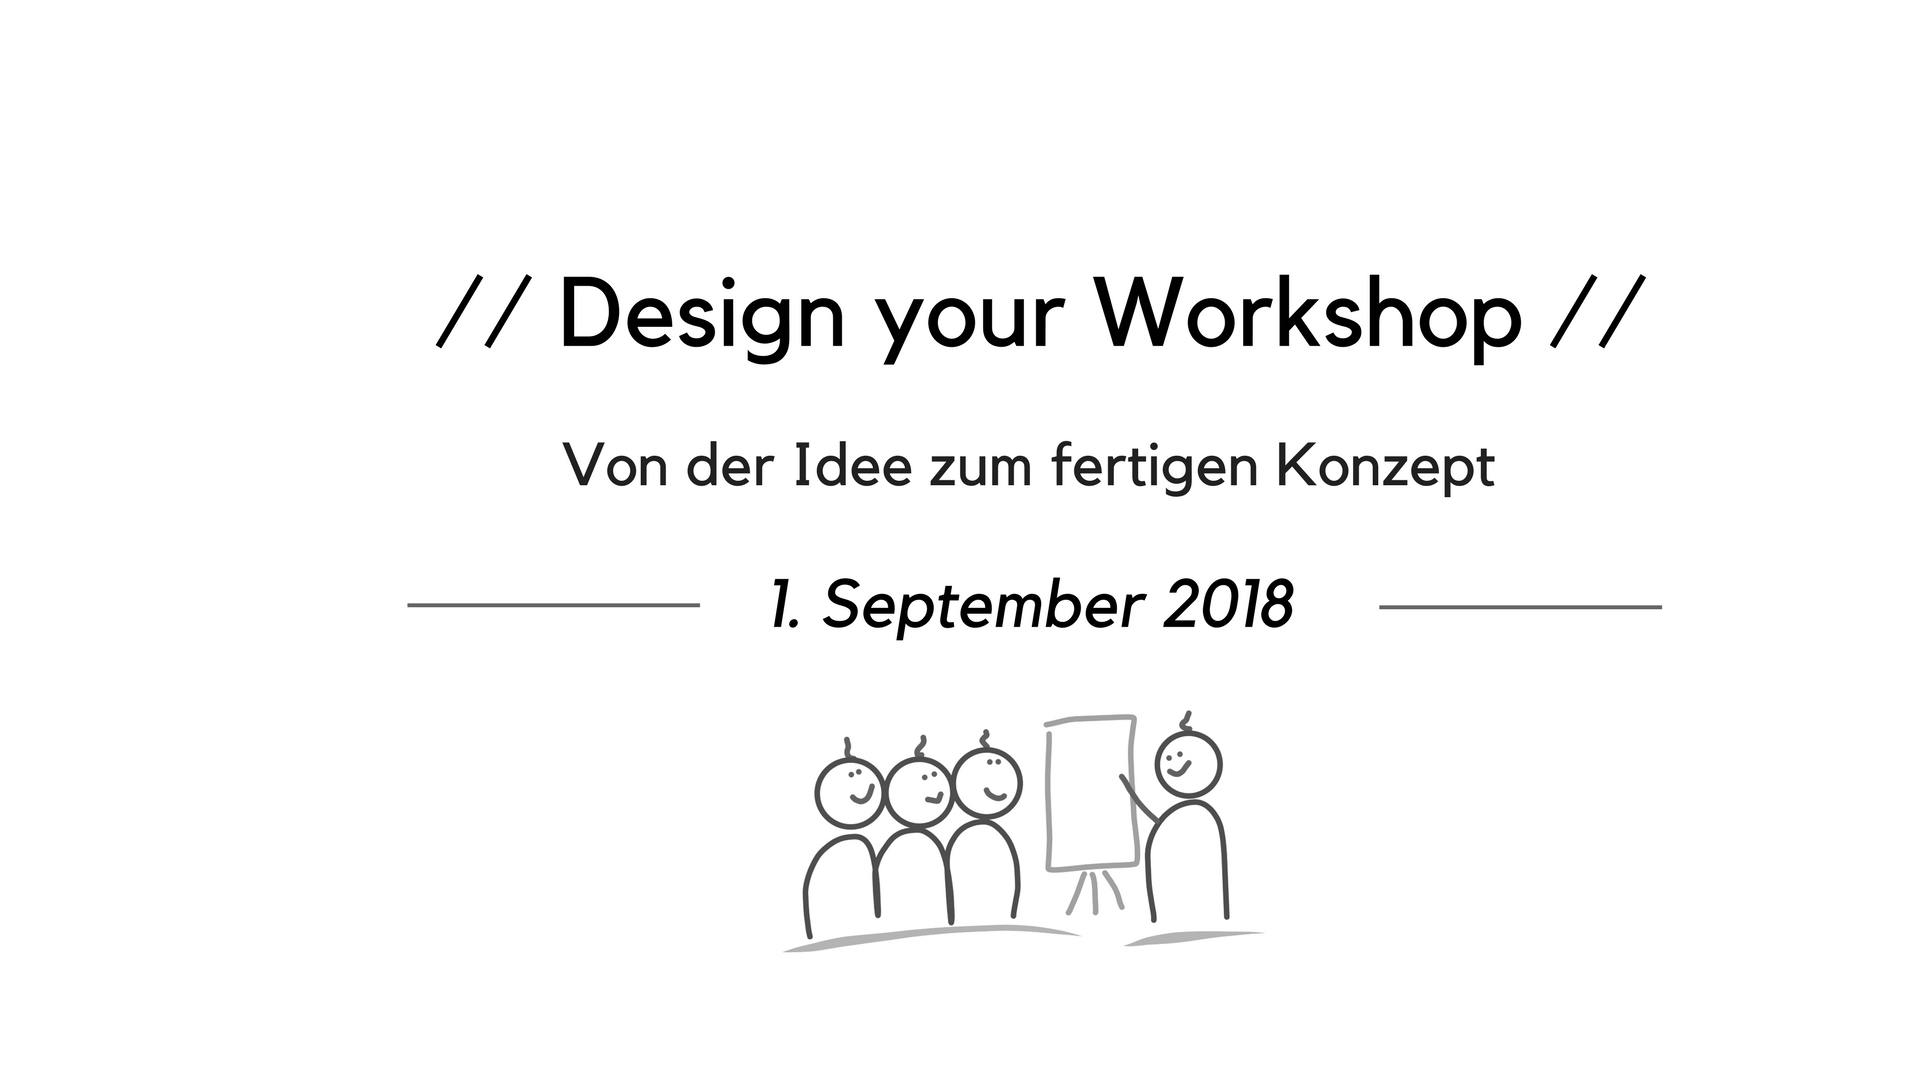 Design your Workshop - Von der Idee zum fertigen Konzept